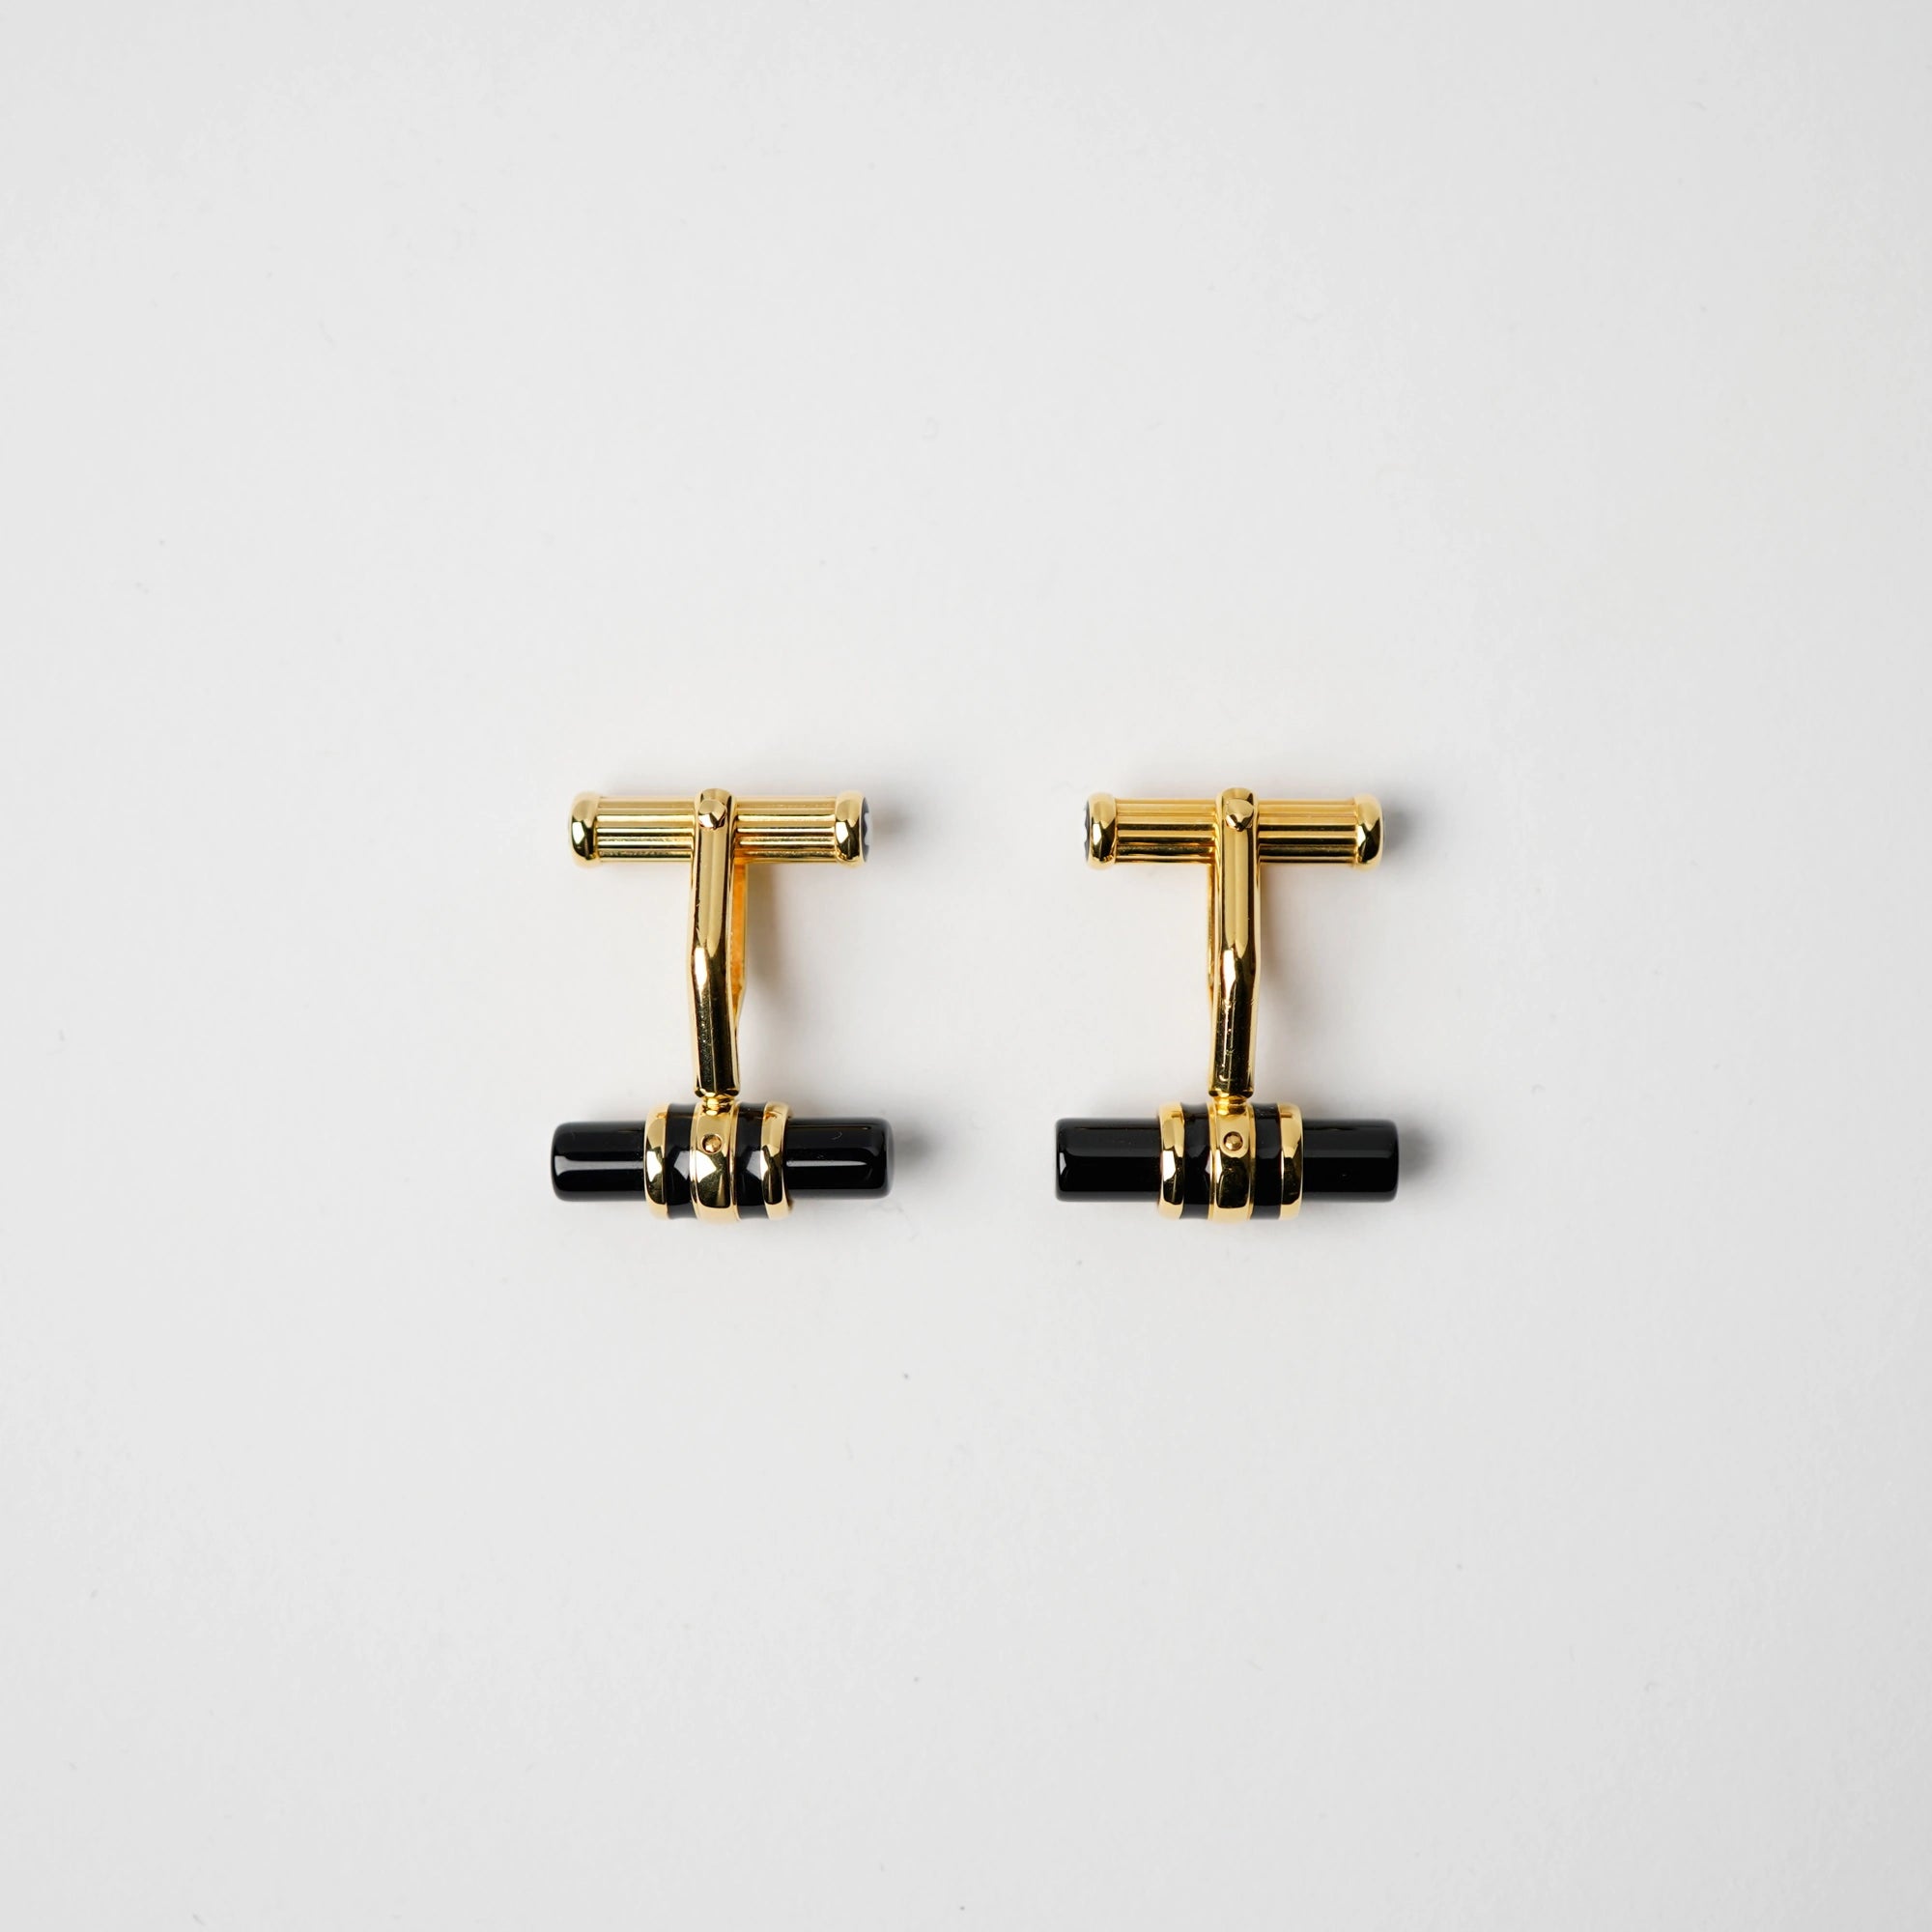 Produktfotografie der Gold-plattinierten Manschettenknöpfe Elegance Bar 3 mit Onyx-Stift